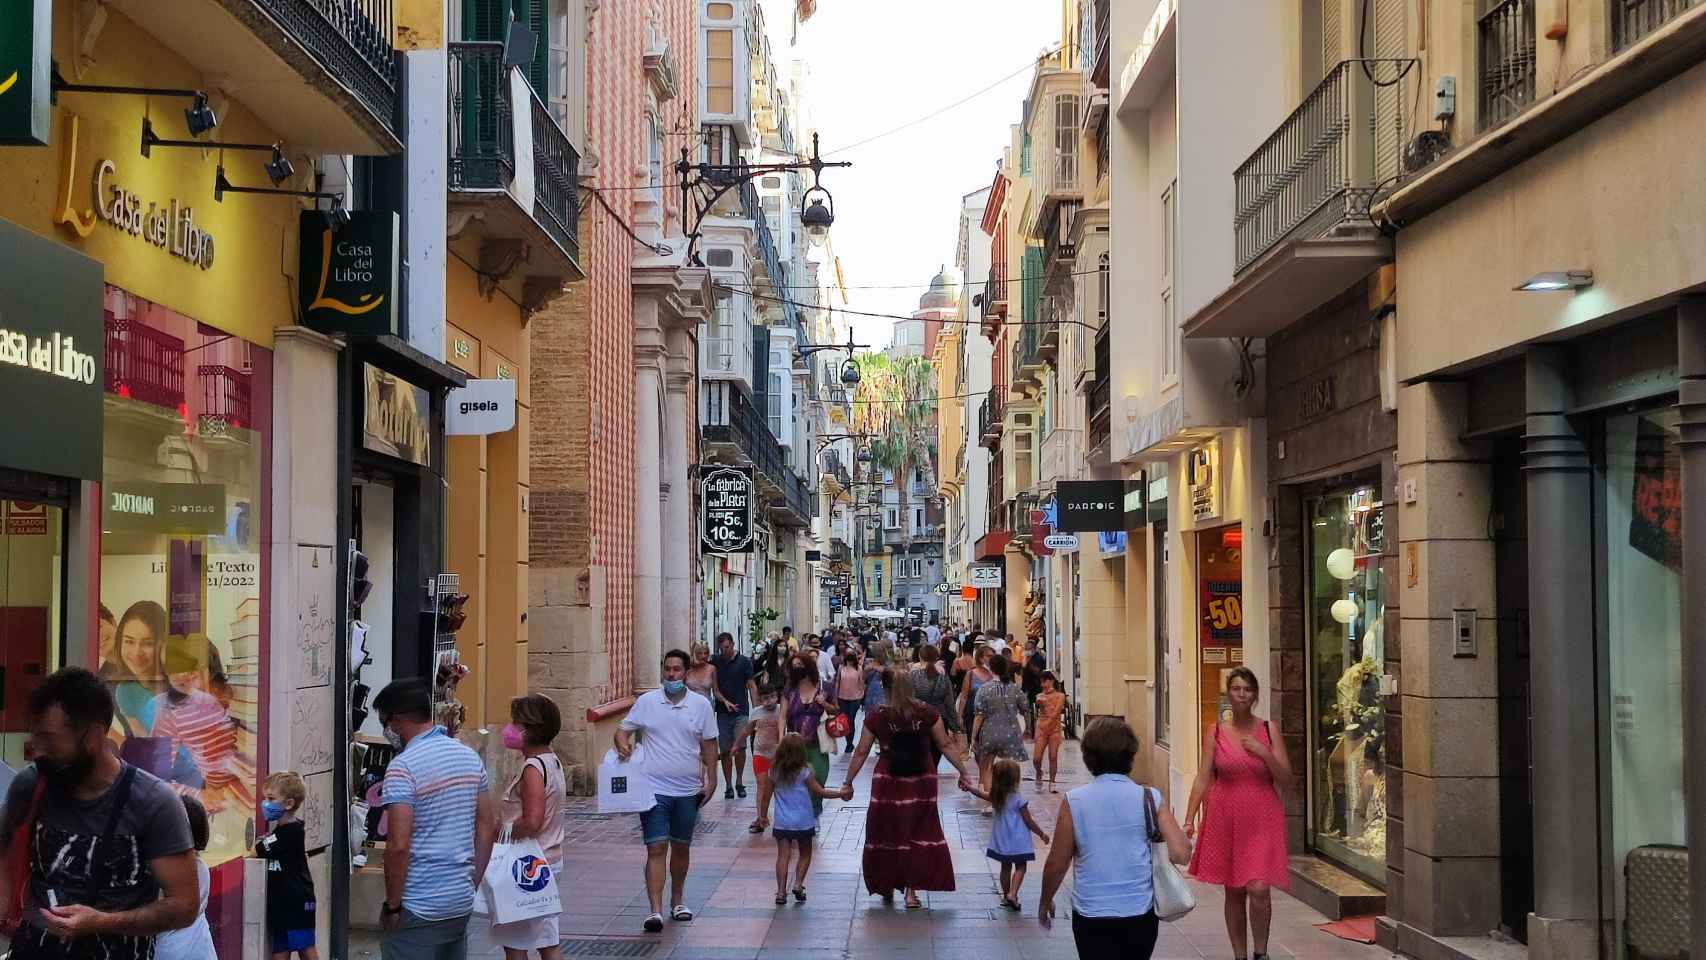 El centro de Málaga es un lugar maravilloso que debe ser protegido y cuidado.